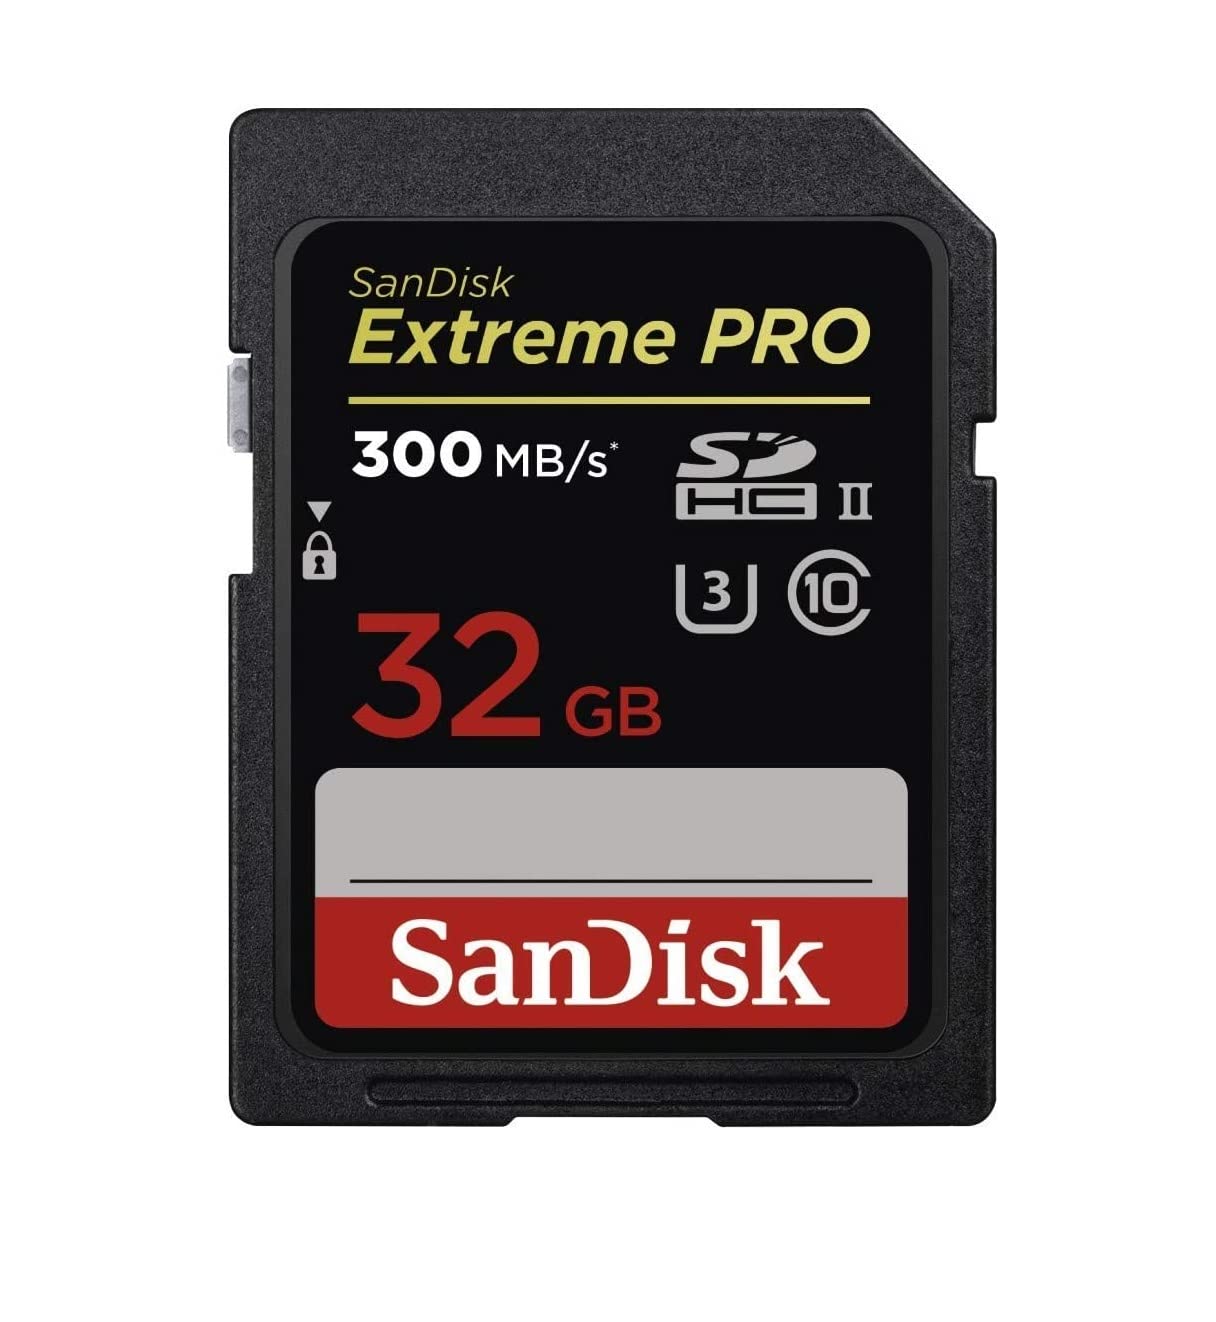 SanDisk Extreme PRO 32 GB SDHC-Speicherkarte bis zu 300 MB/Sek, UHS-II, Class 10, U3